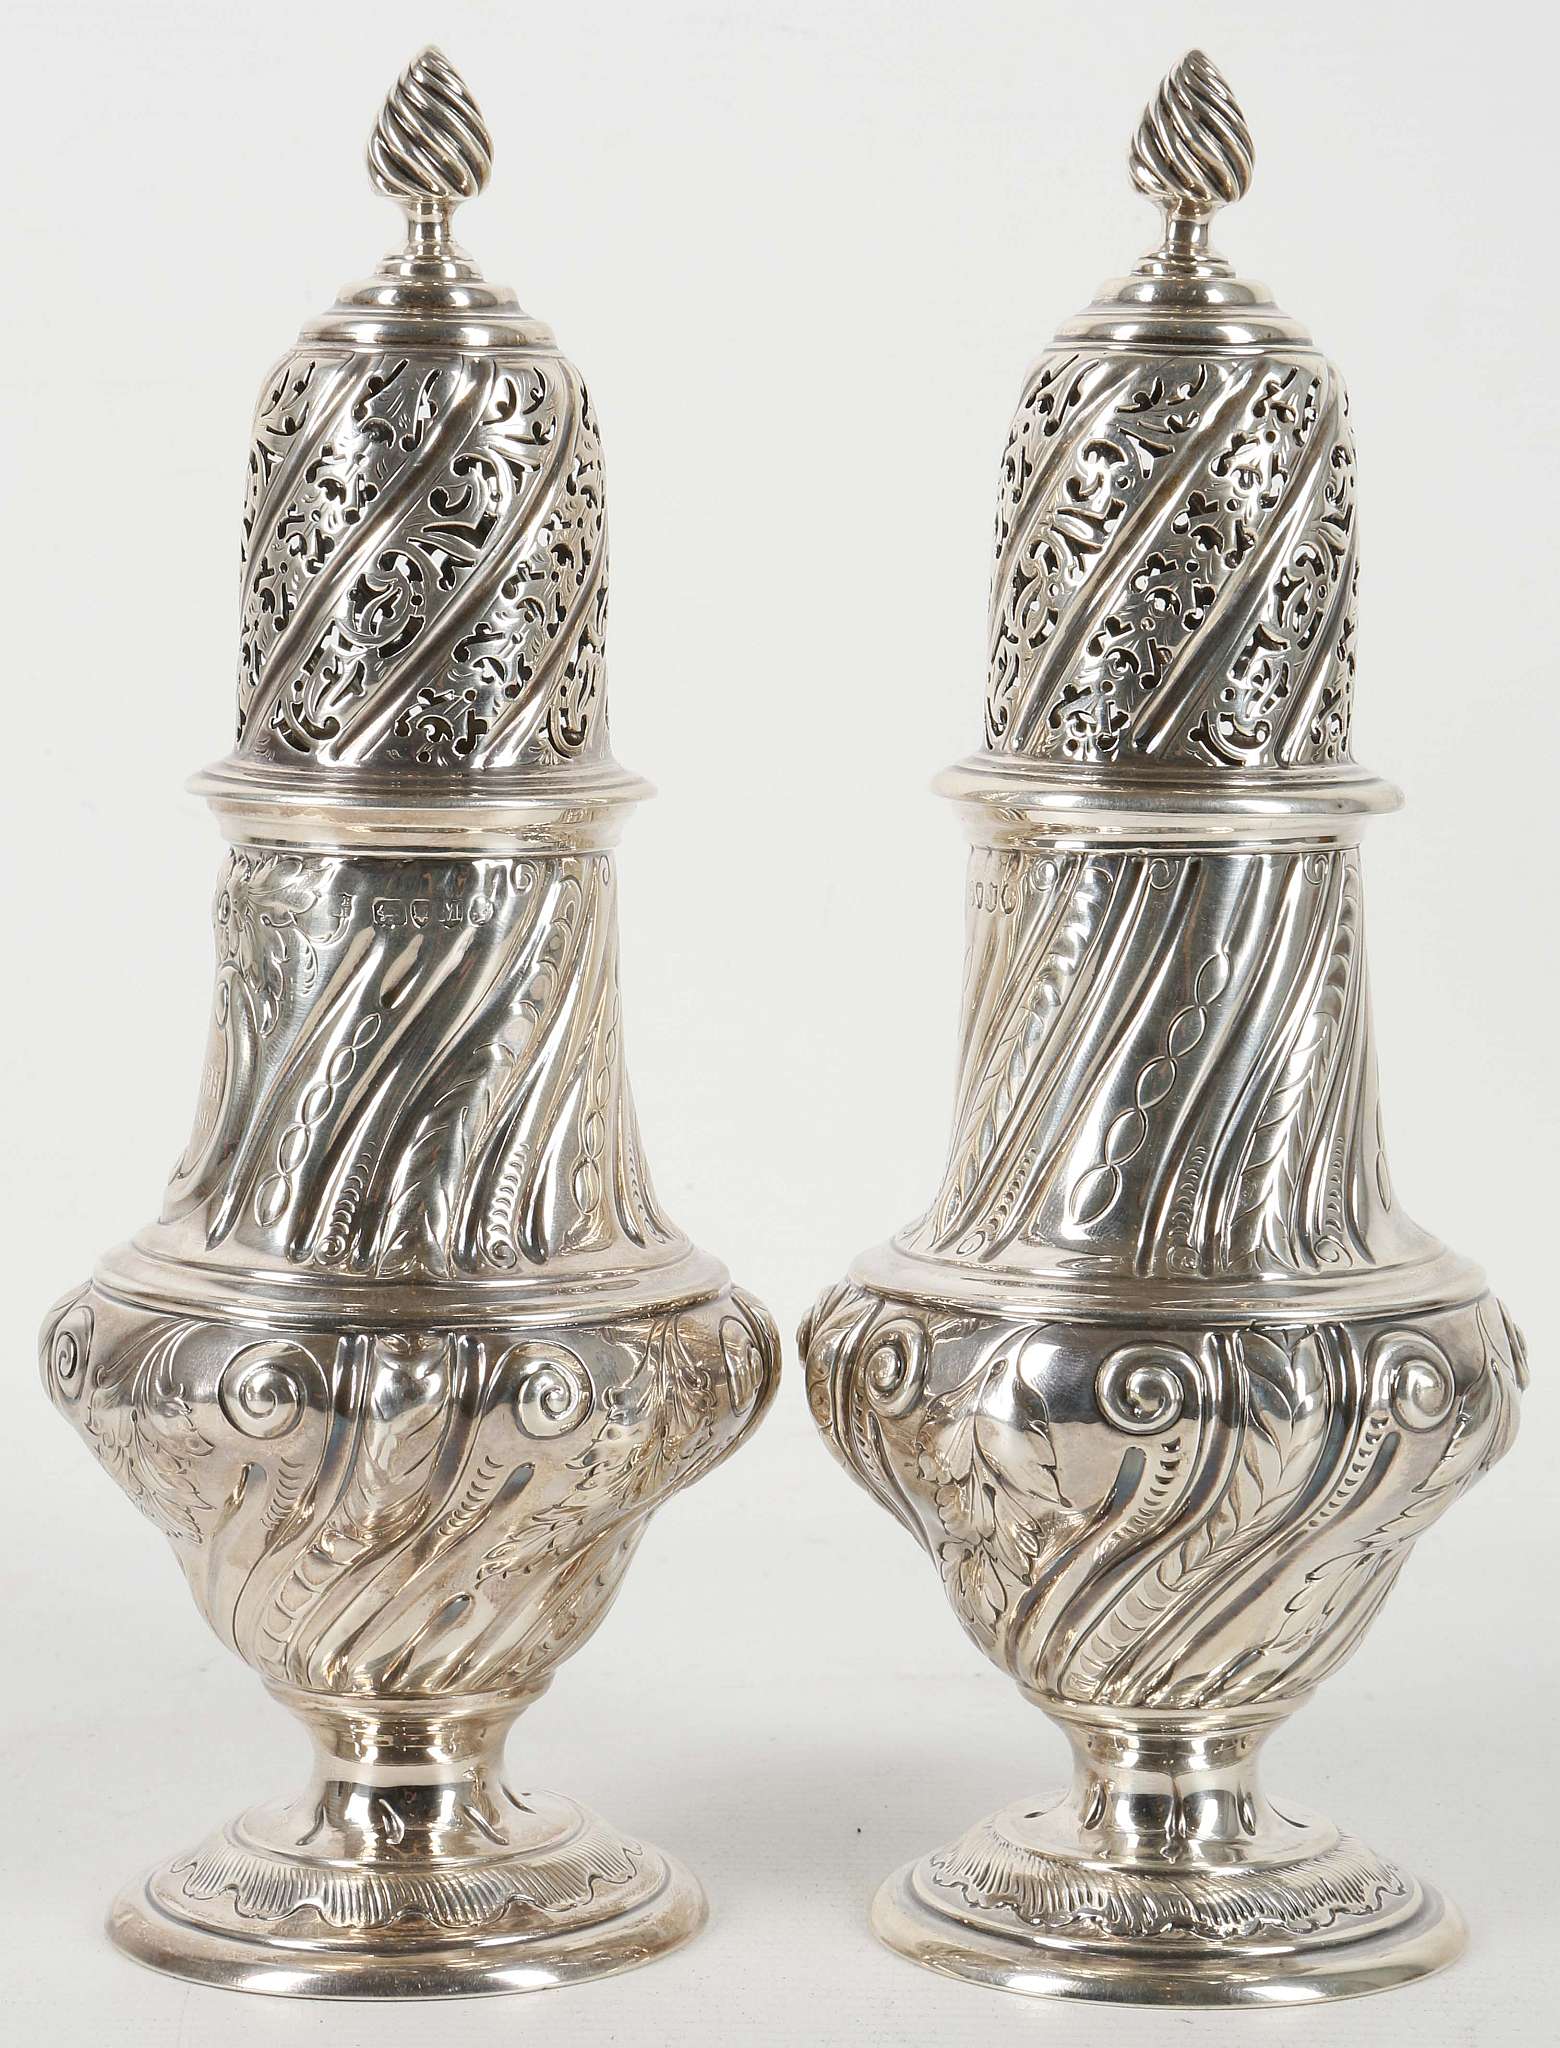 A pair of 1887 hallmarked silver sugar castors, Thomas Bradbury & Sons, London